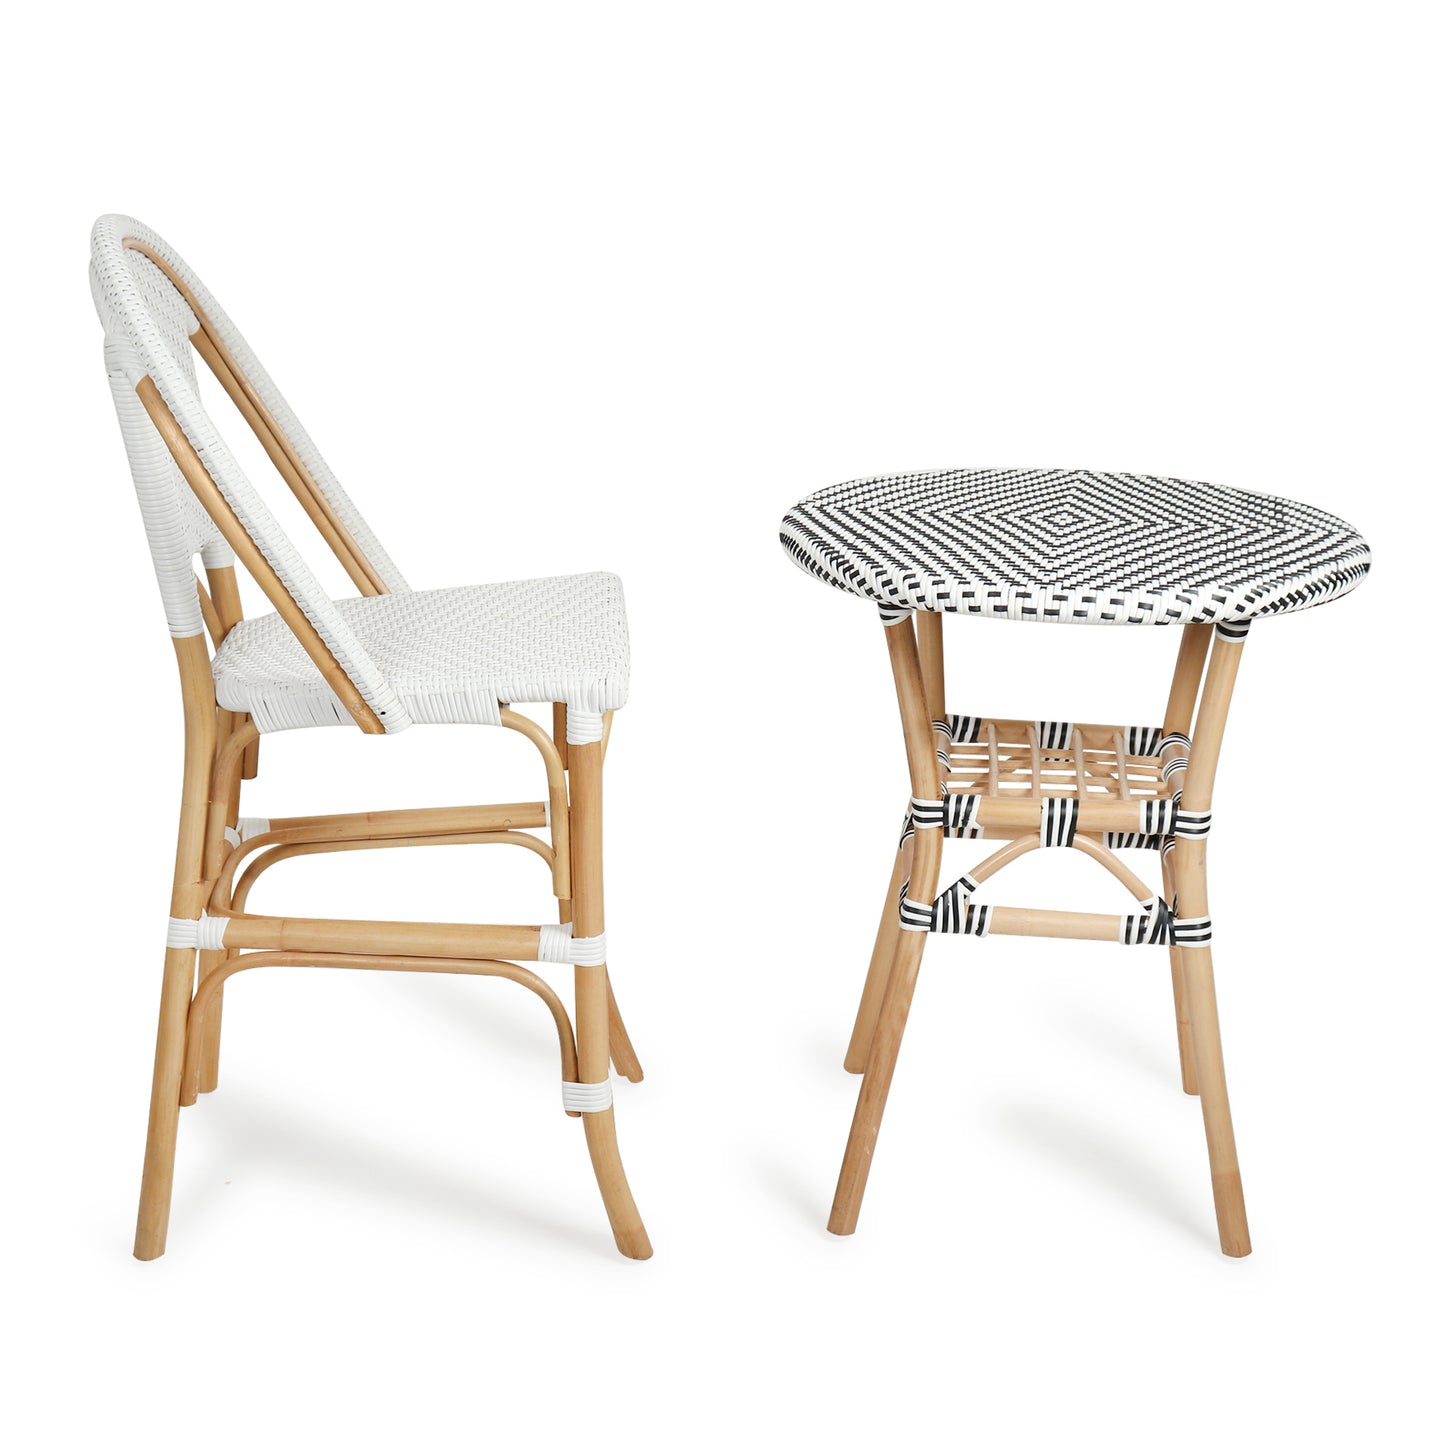 Mana Bamboo Bar Chair| Bamboo Chair | Cane High Chair